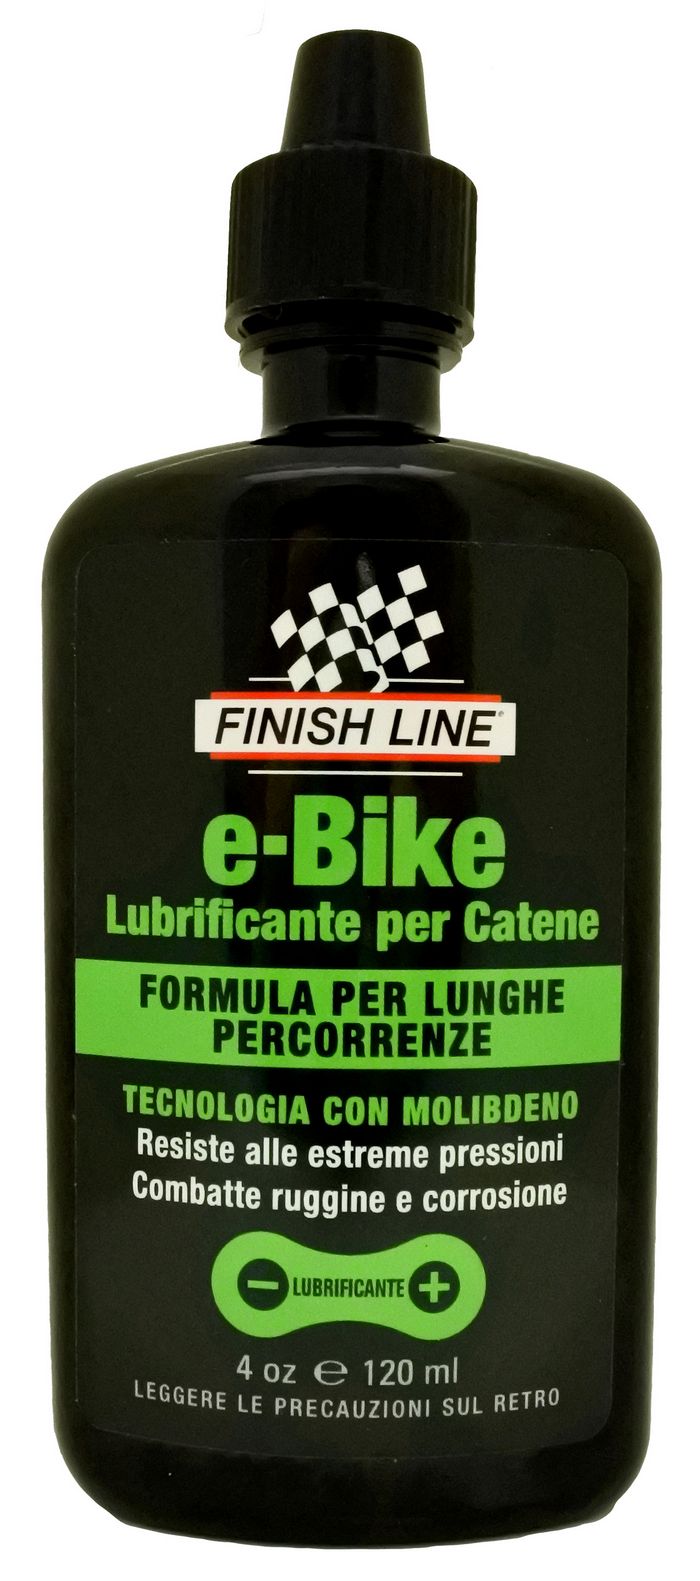 Lubrificante per catene E-bike Finish Line 120 ml.  